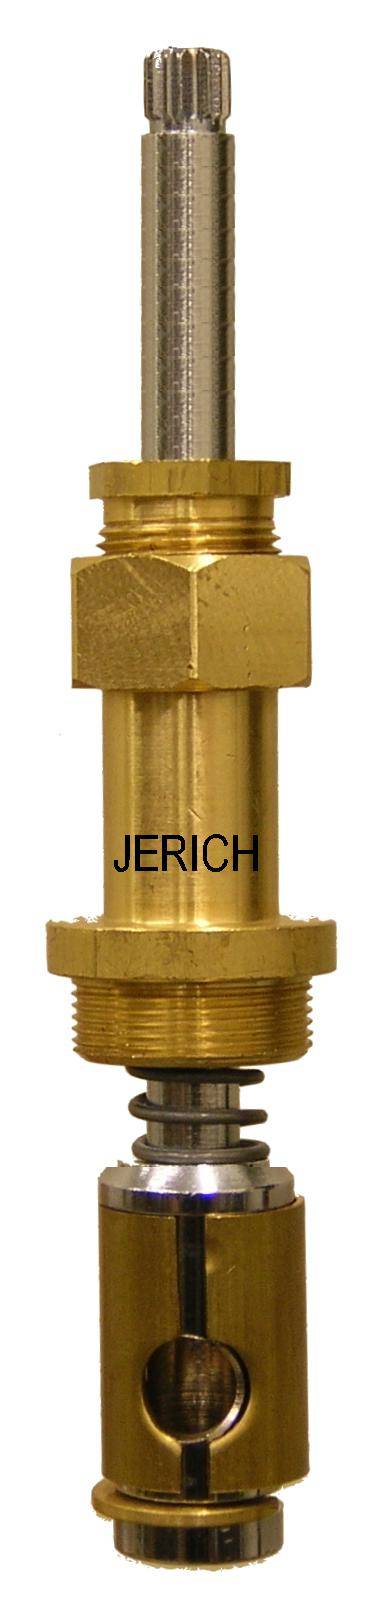 Jerich 08170 Royal Brass diverter stem